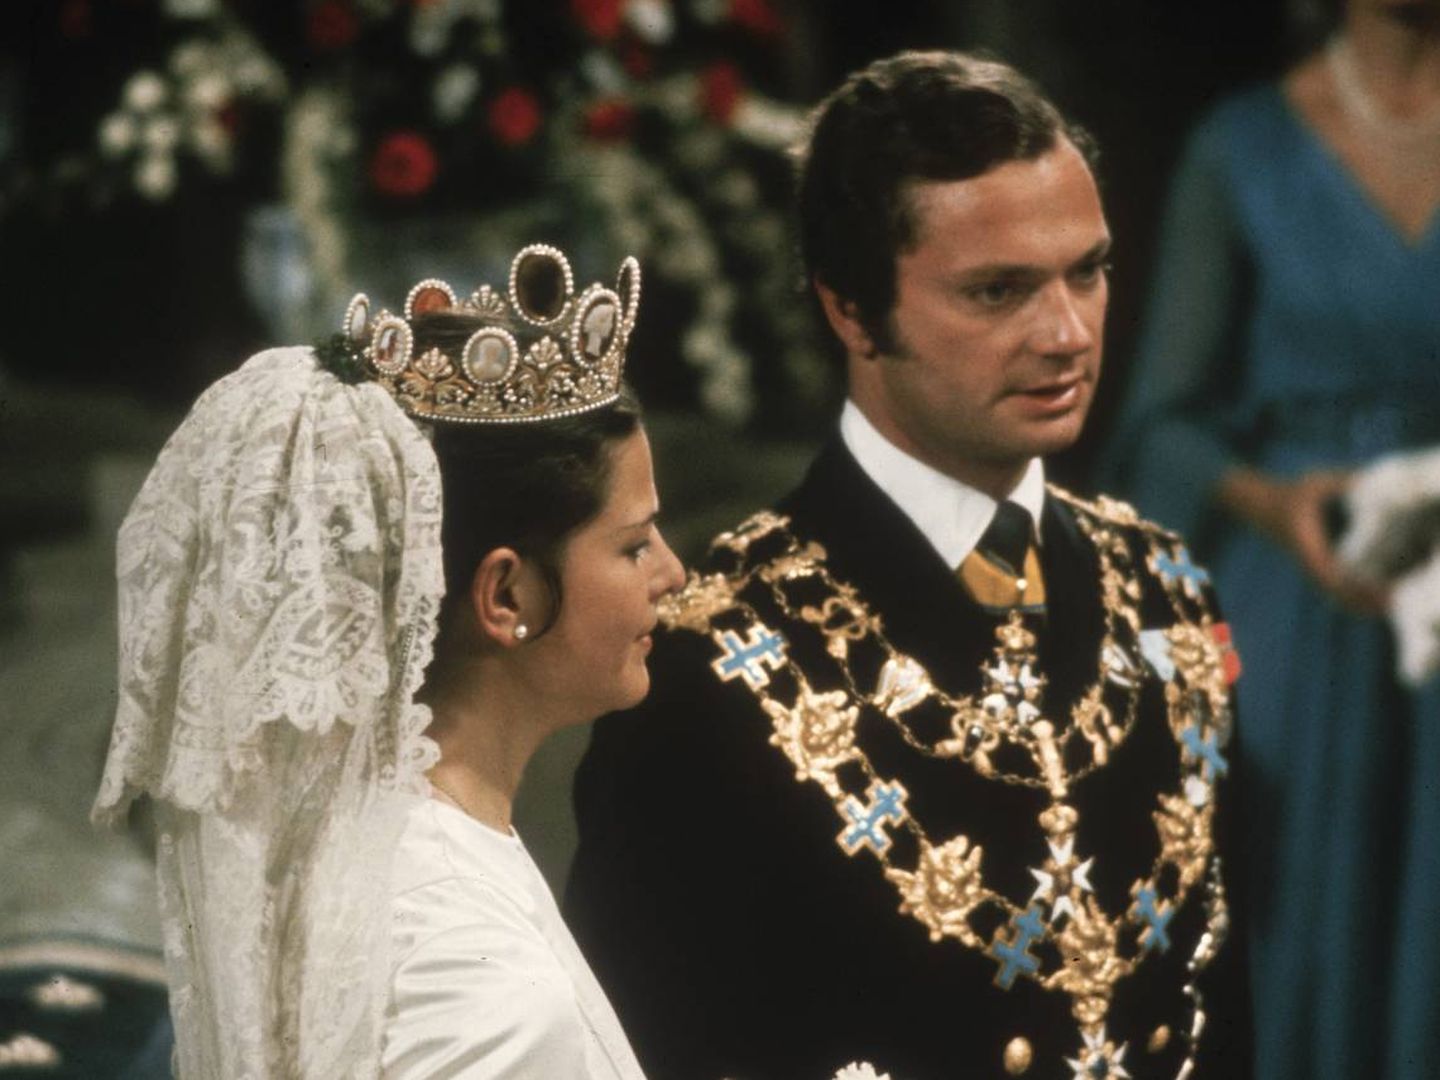 La boda de los reyes de Suecia, cargados de joyas, en 1976. (Getty)